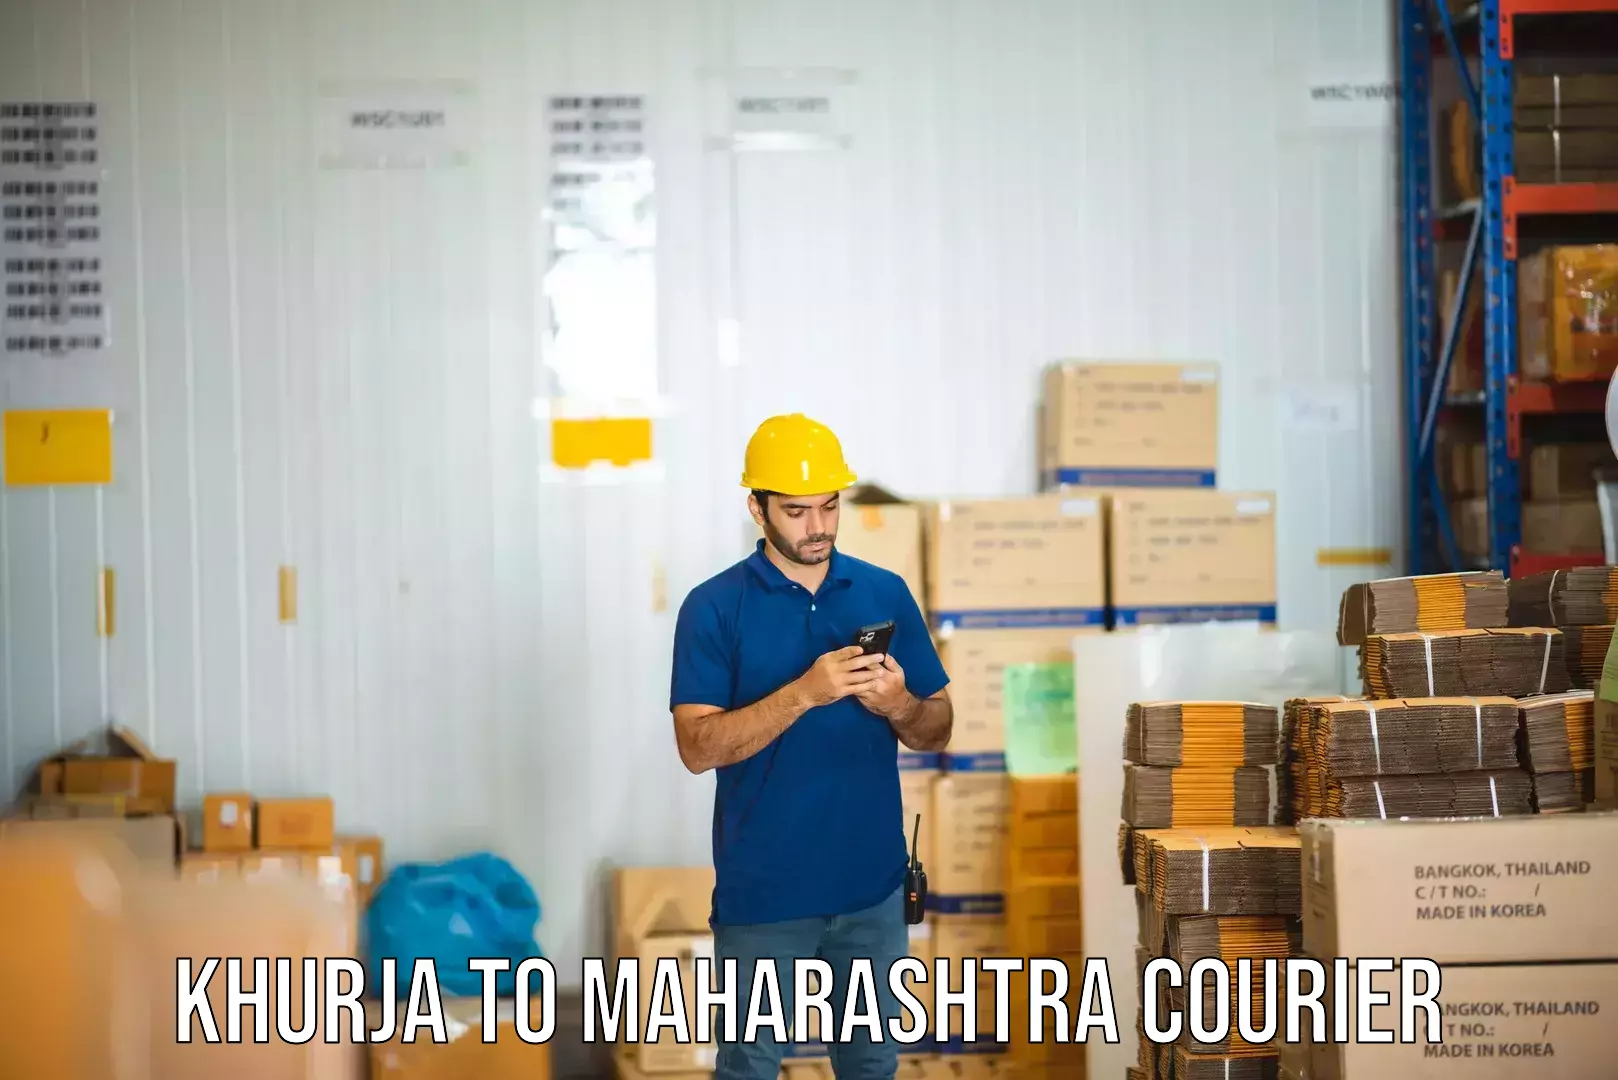 Nationwide shipping capabilities Khurja to Maharashtra